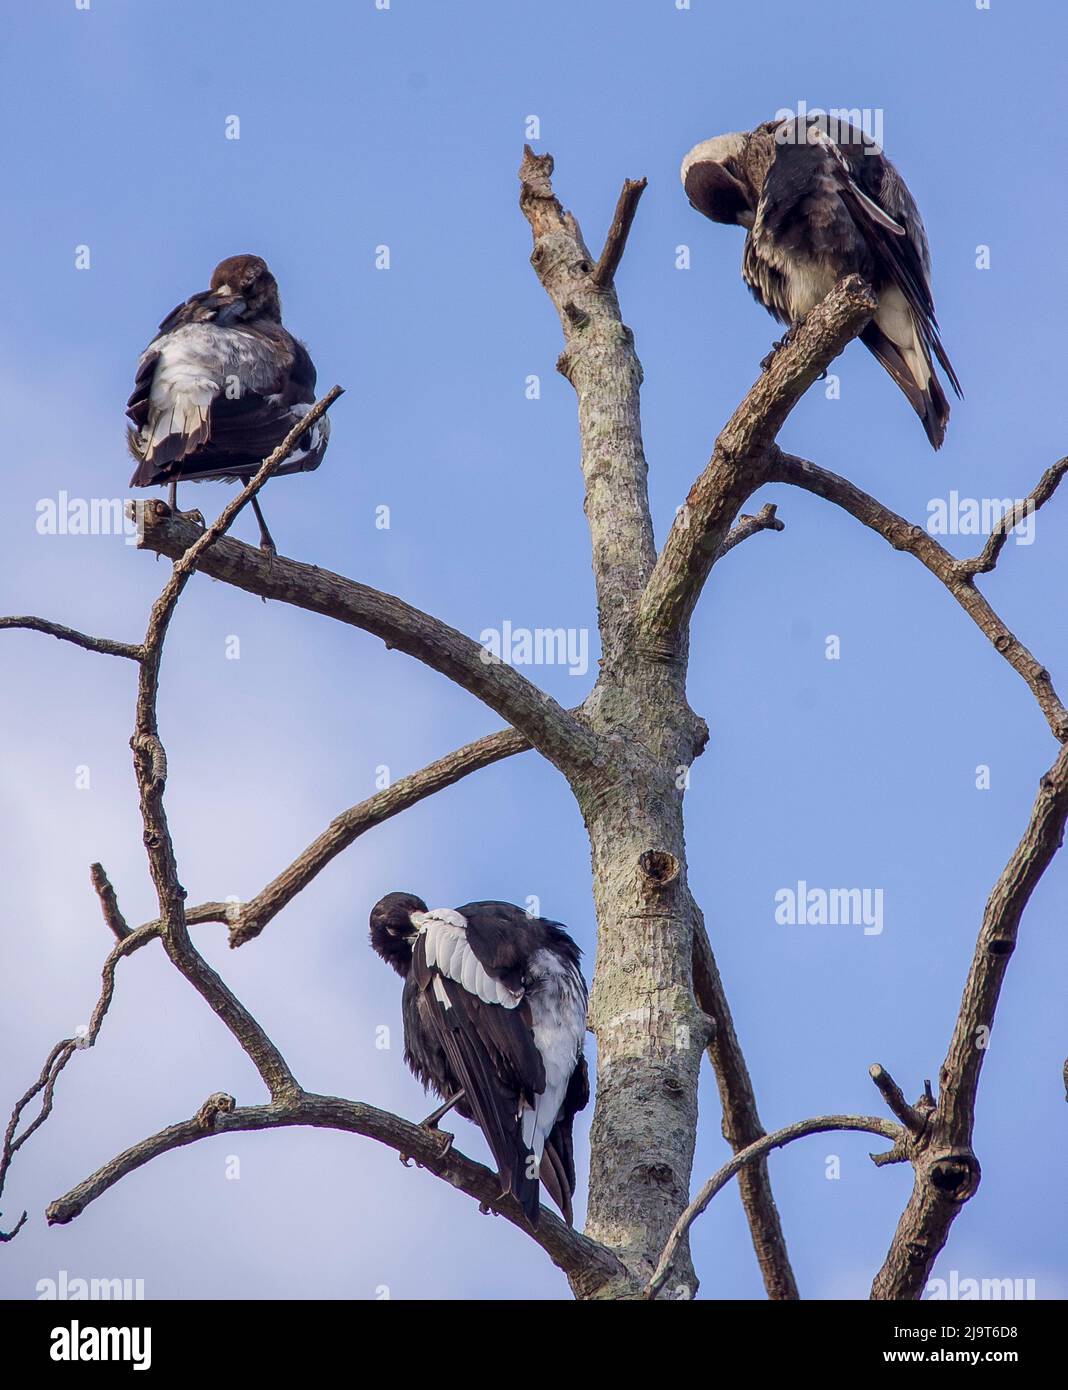 Trois très jeunes magpies australiennes, cracticus tibicen, perchés dans un arbre mort, tous se prêtant ensemble, profitant du soleil d'été et du ciel bleu. Banque D'Images